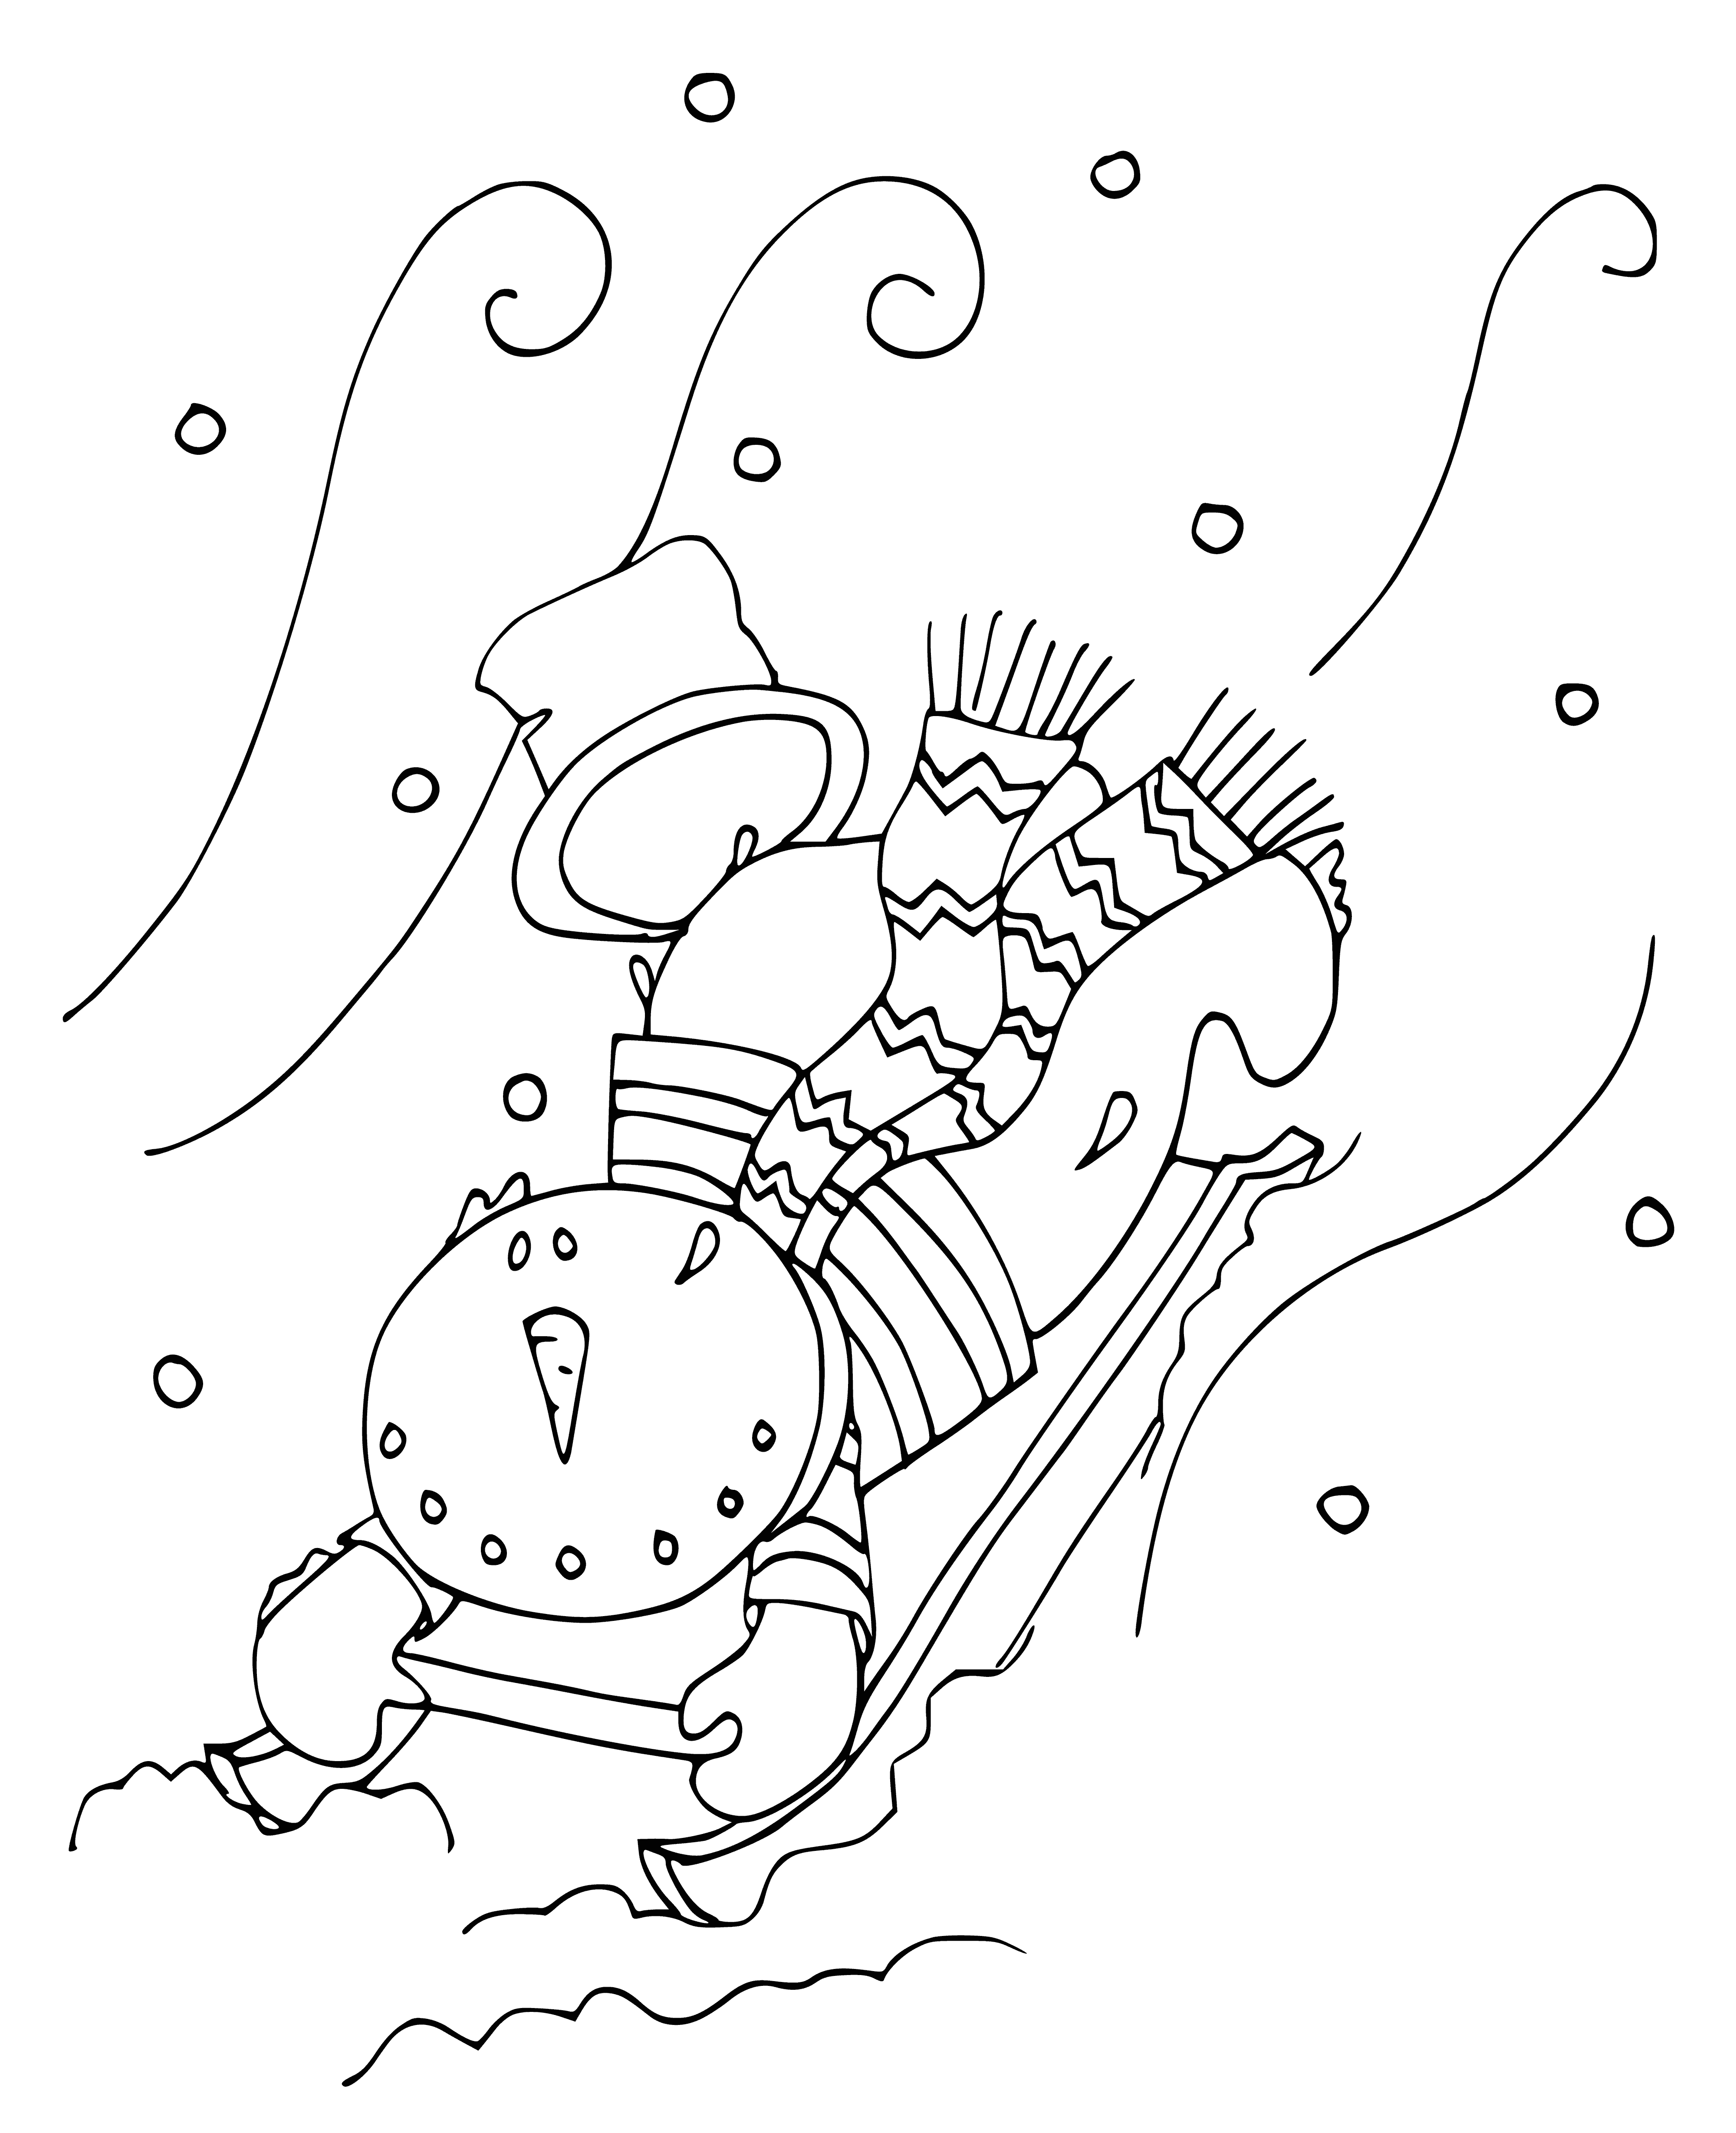 Kardan adam kaydıraktan aşağı yuvarlanıyor boyama sayfası